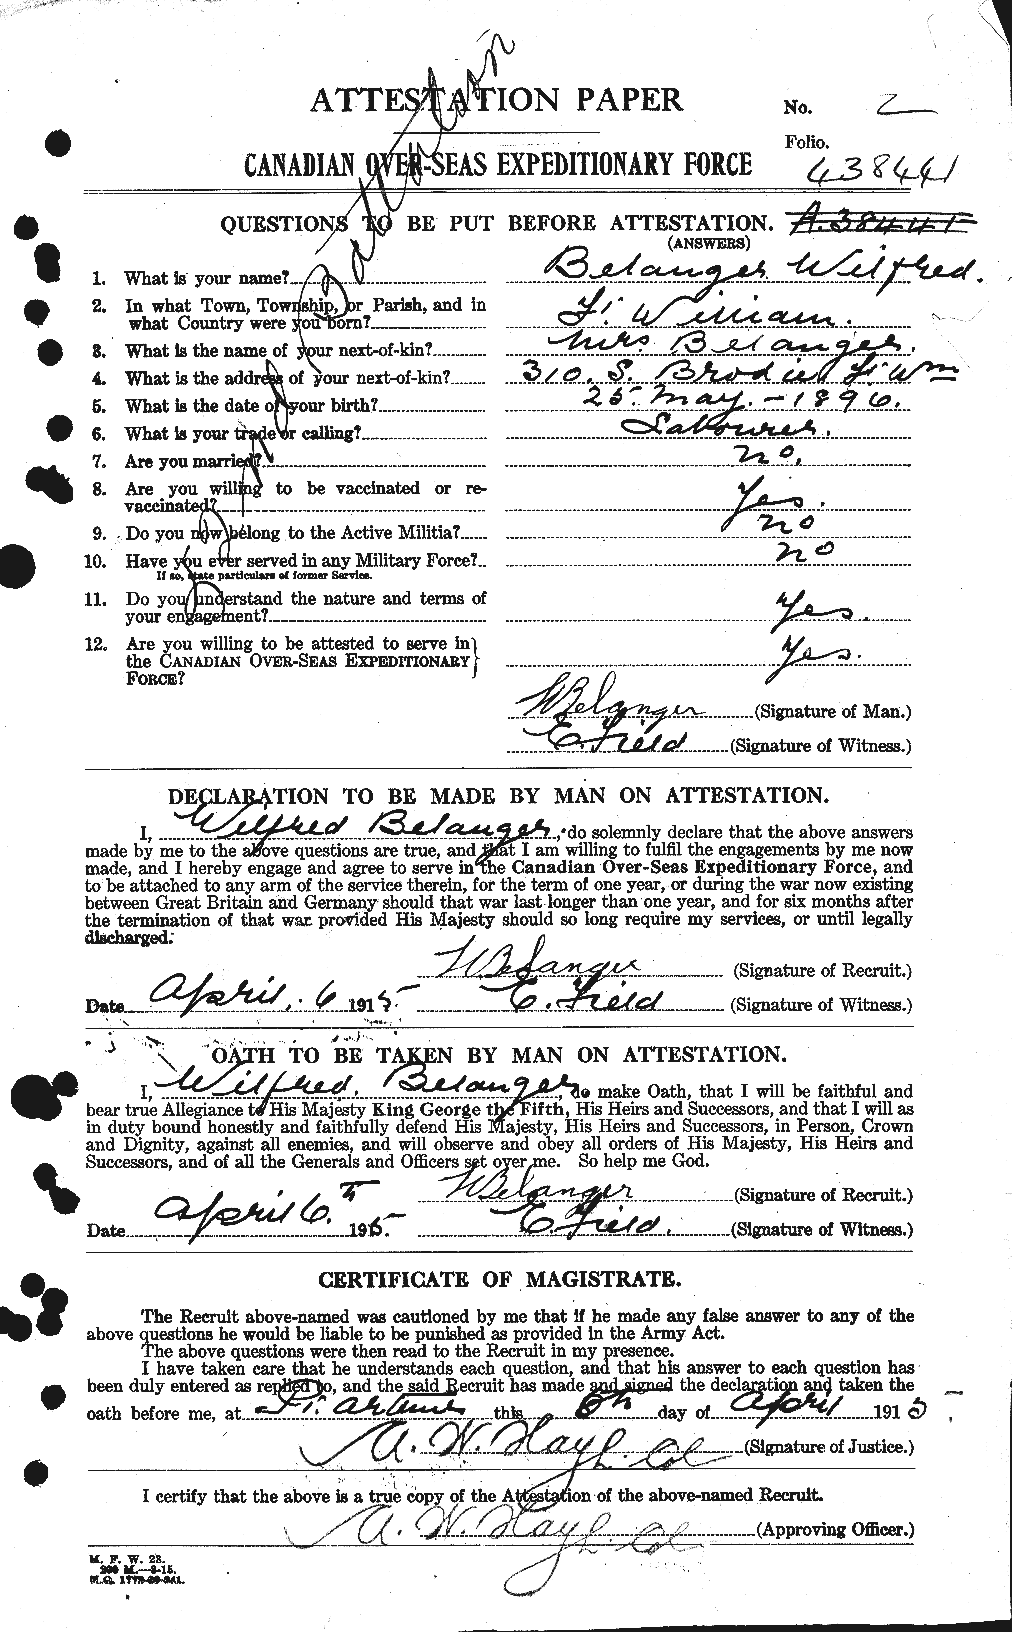 Dossiers du Personnel de la Première Guerre mondiale - CEC 232643a